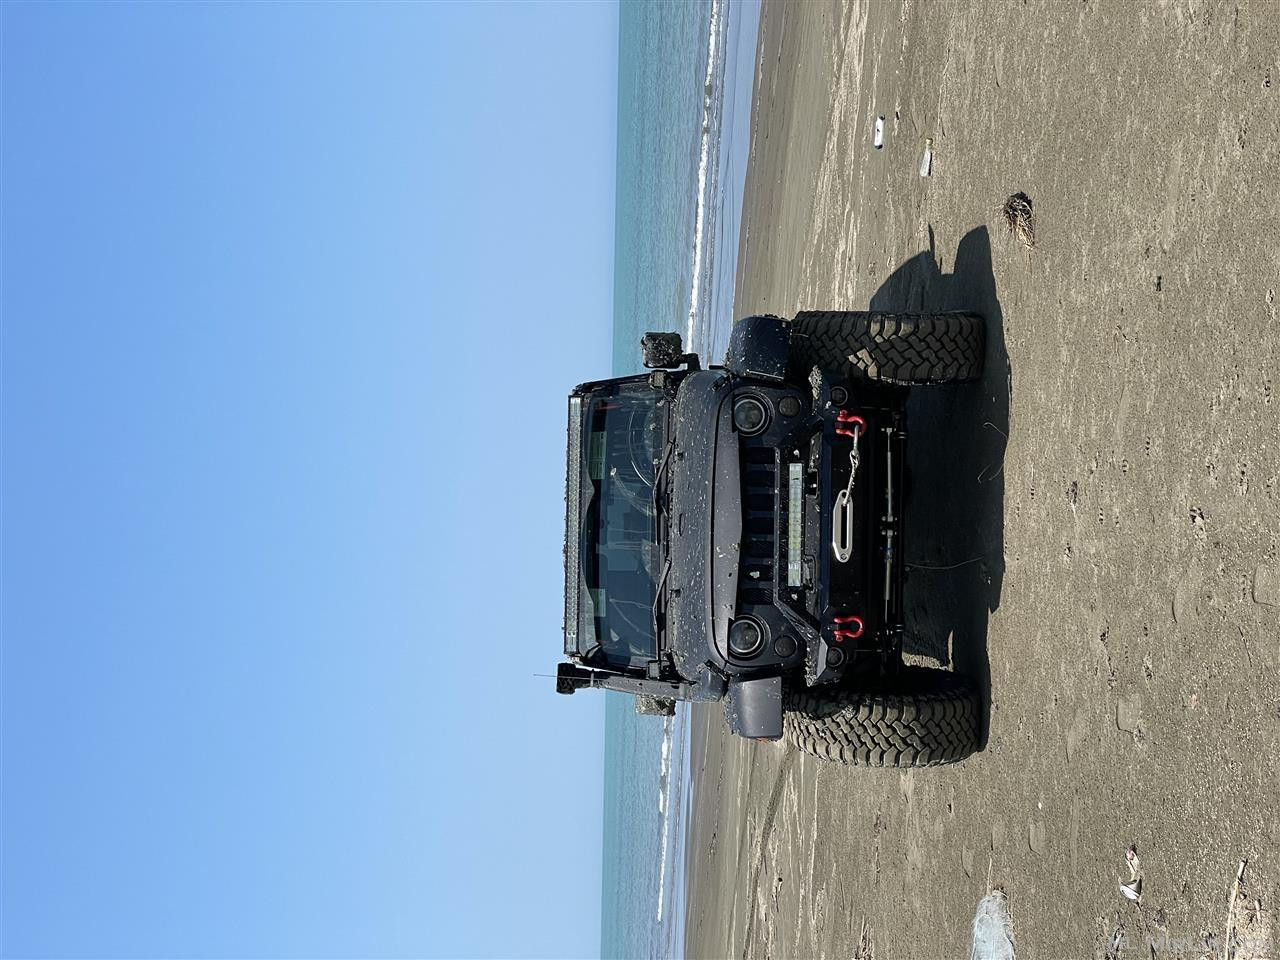 Jeep wrangler 